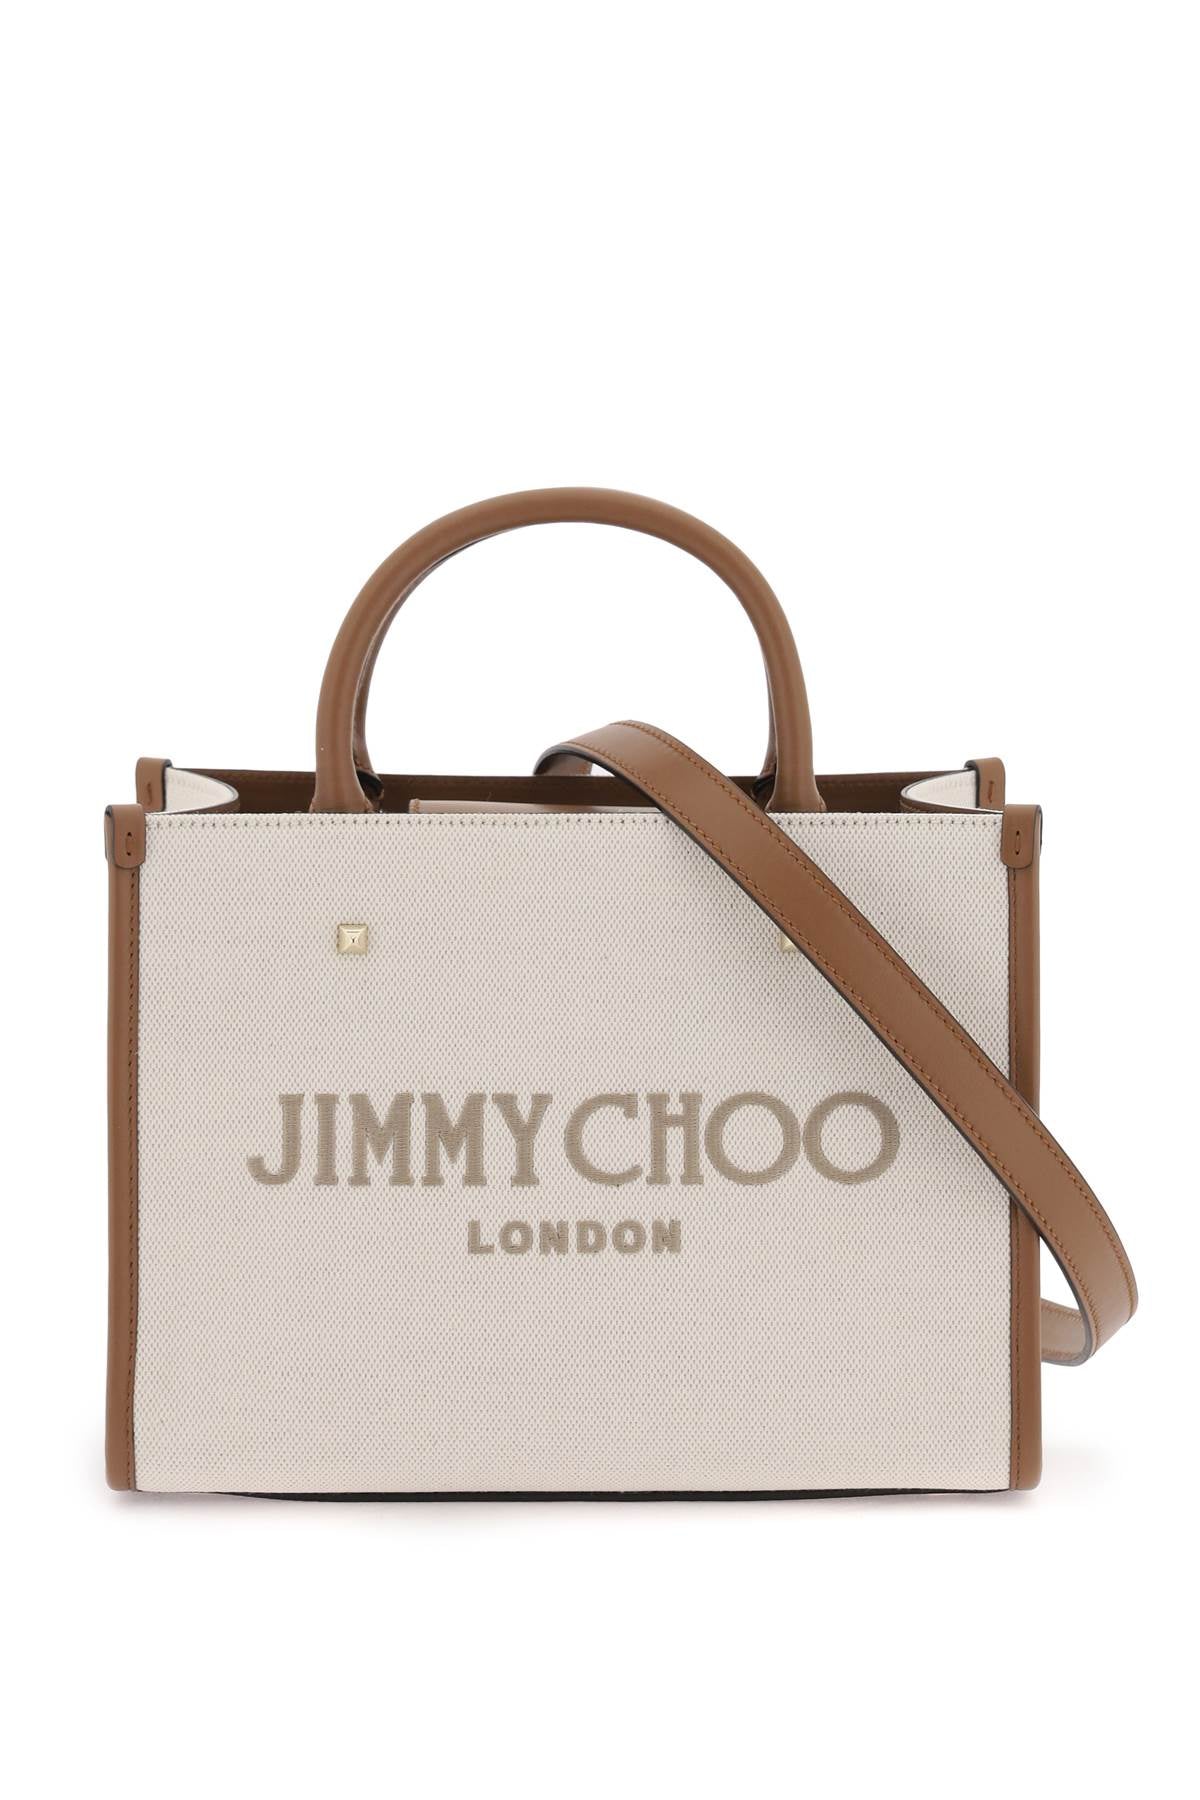 Jimmy Choo Avenue S Tote Bag Cream